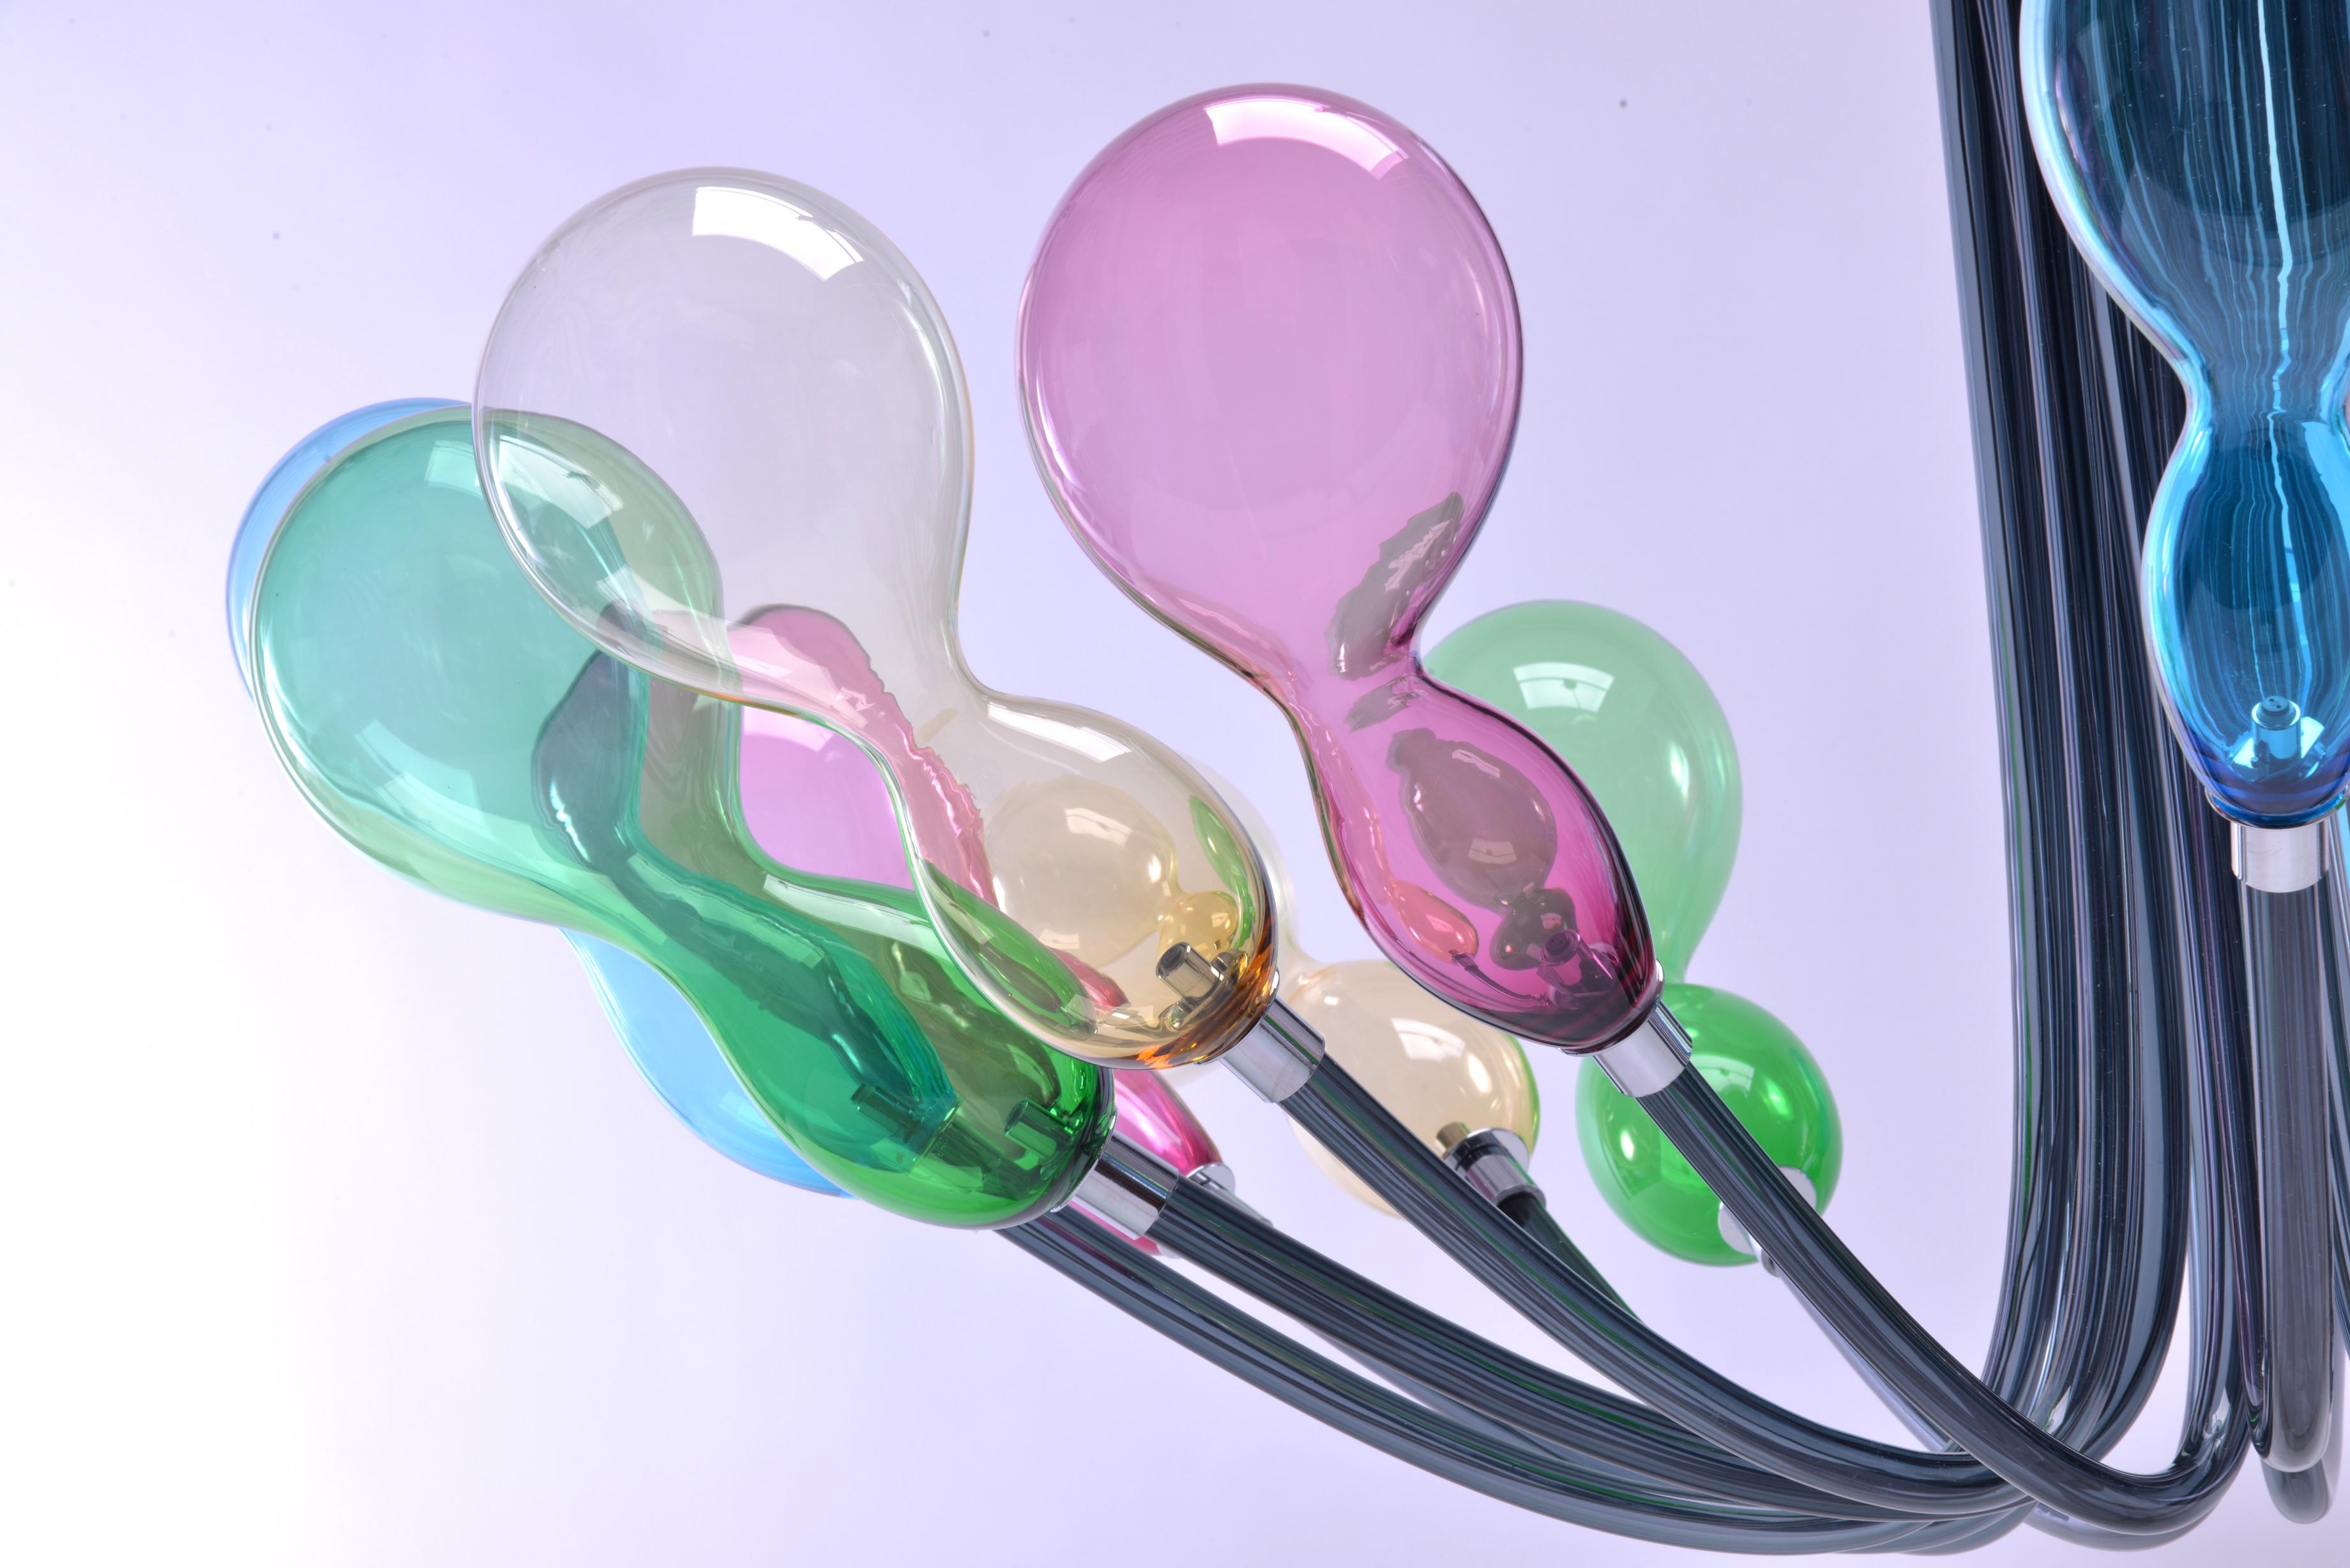 21. Jahrhundert Karim Rashid Kronleuchter BLOB 16 Lichter Murano Glas verschiedenen Farben.
Die Beleuchtungselemente von Blob scheinen wie in der Luft schwebende Lichtballons zu sein, ein frischer Look für diesen Kronleuchter der neuen Generation,